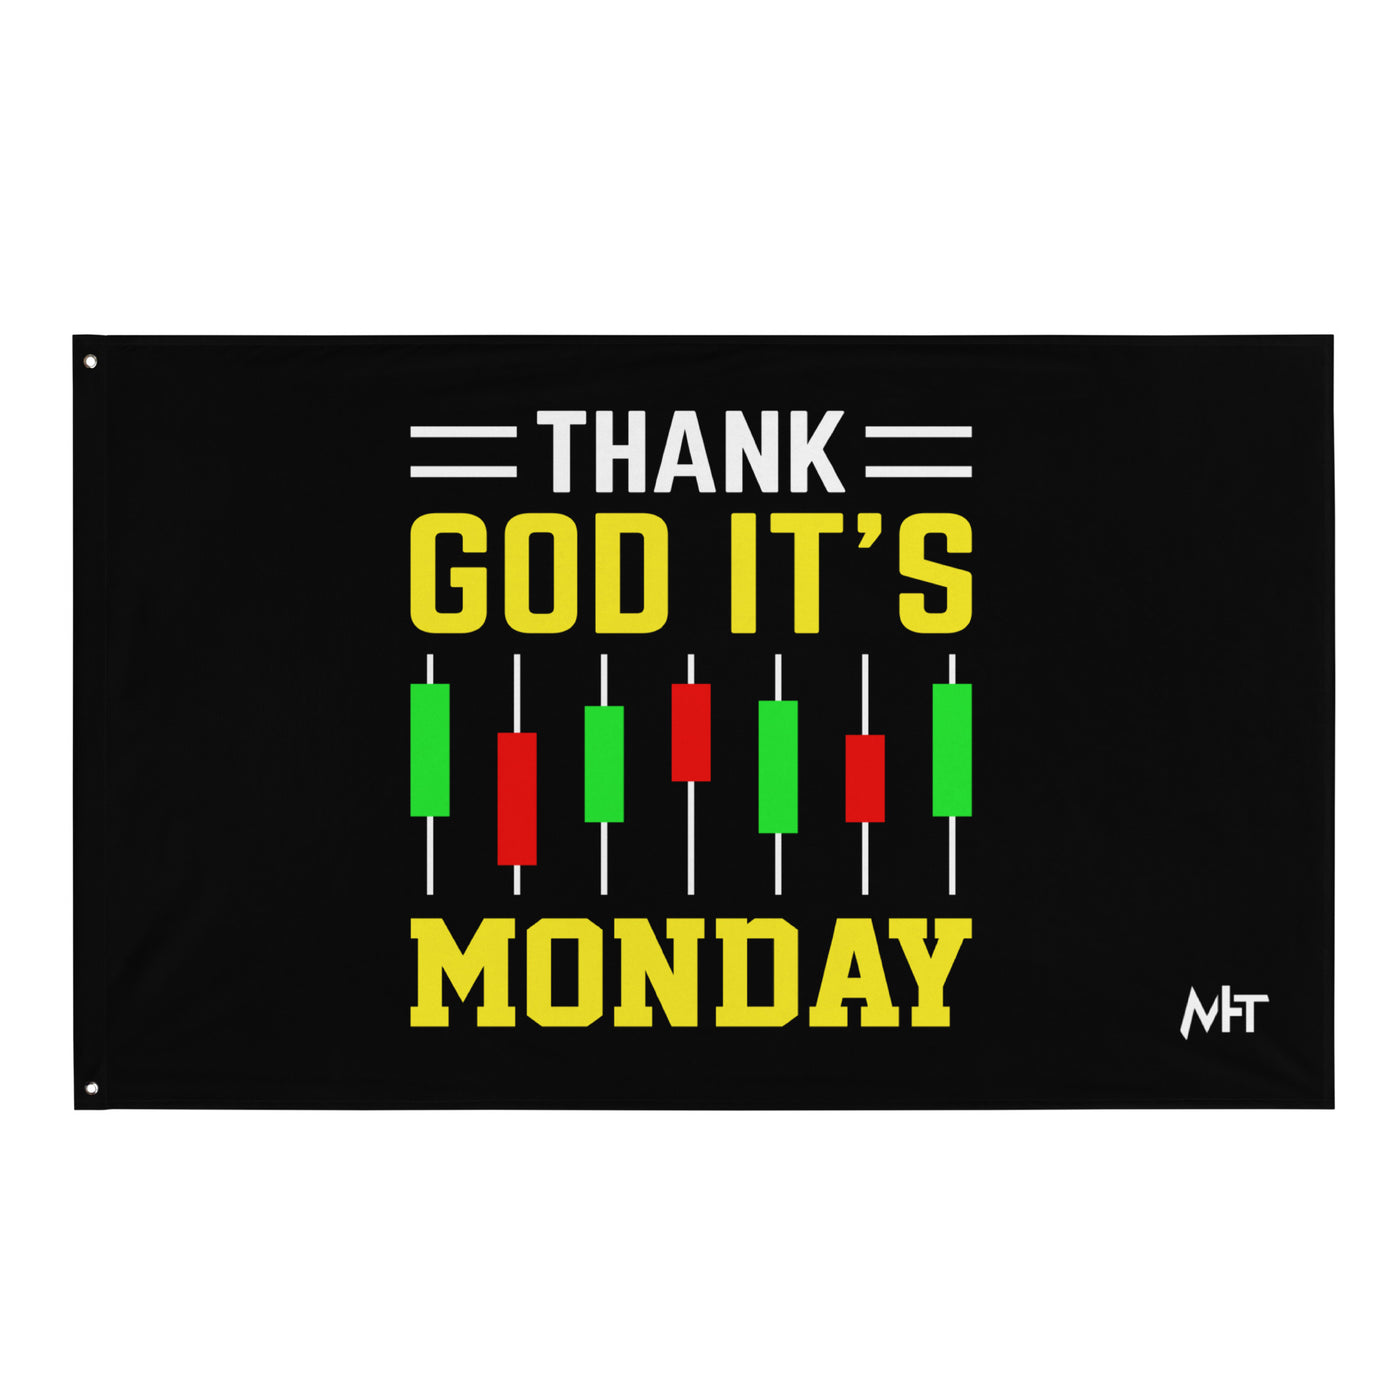 Thank God! It's Monday - Flag